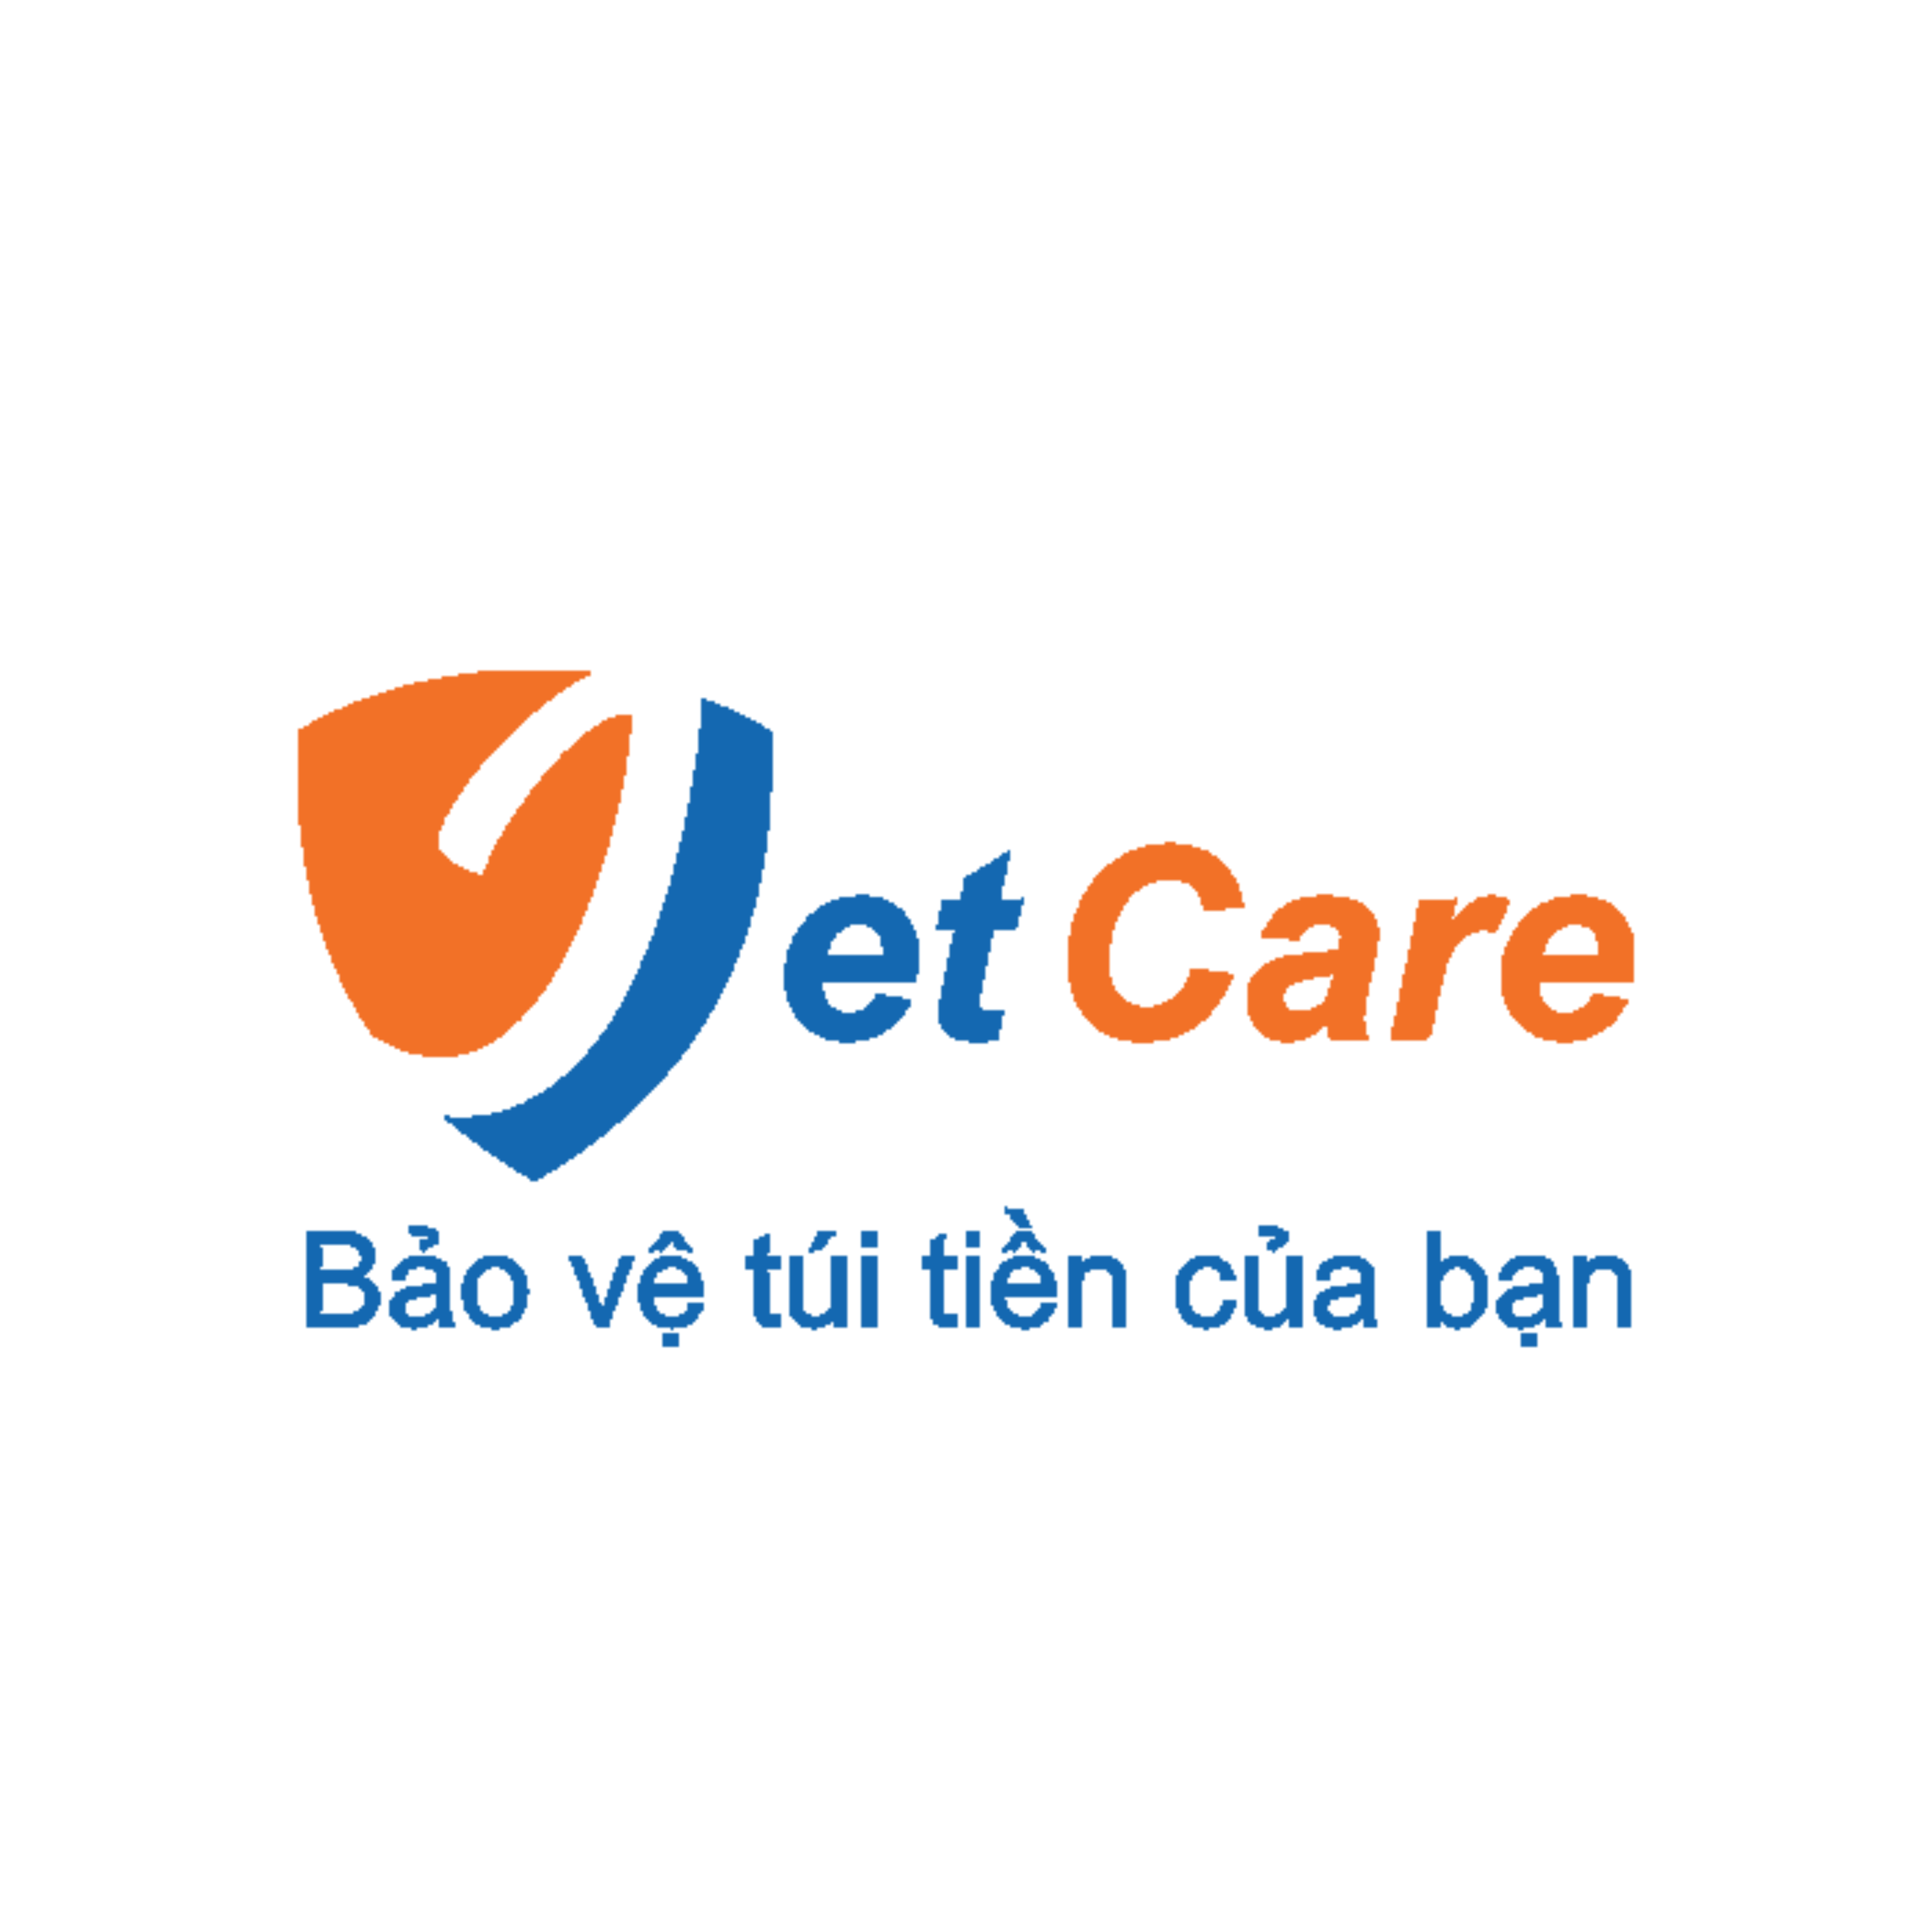 Jetcare